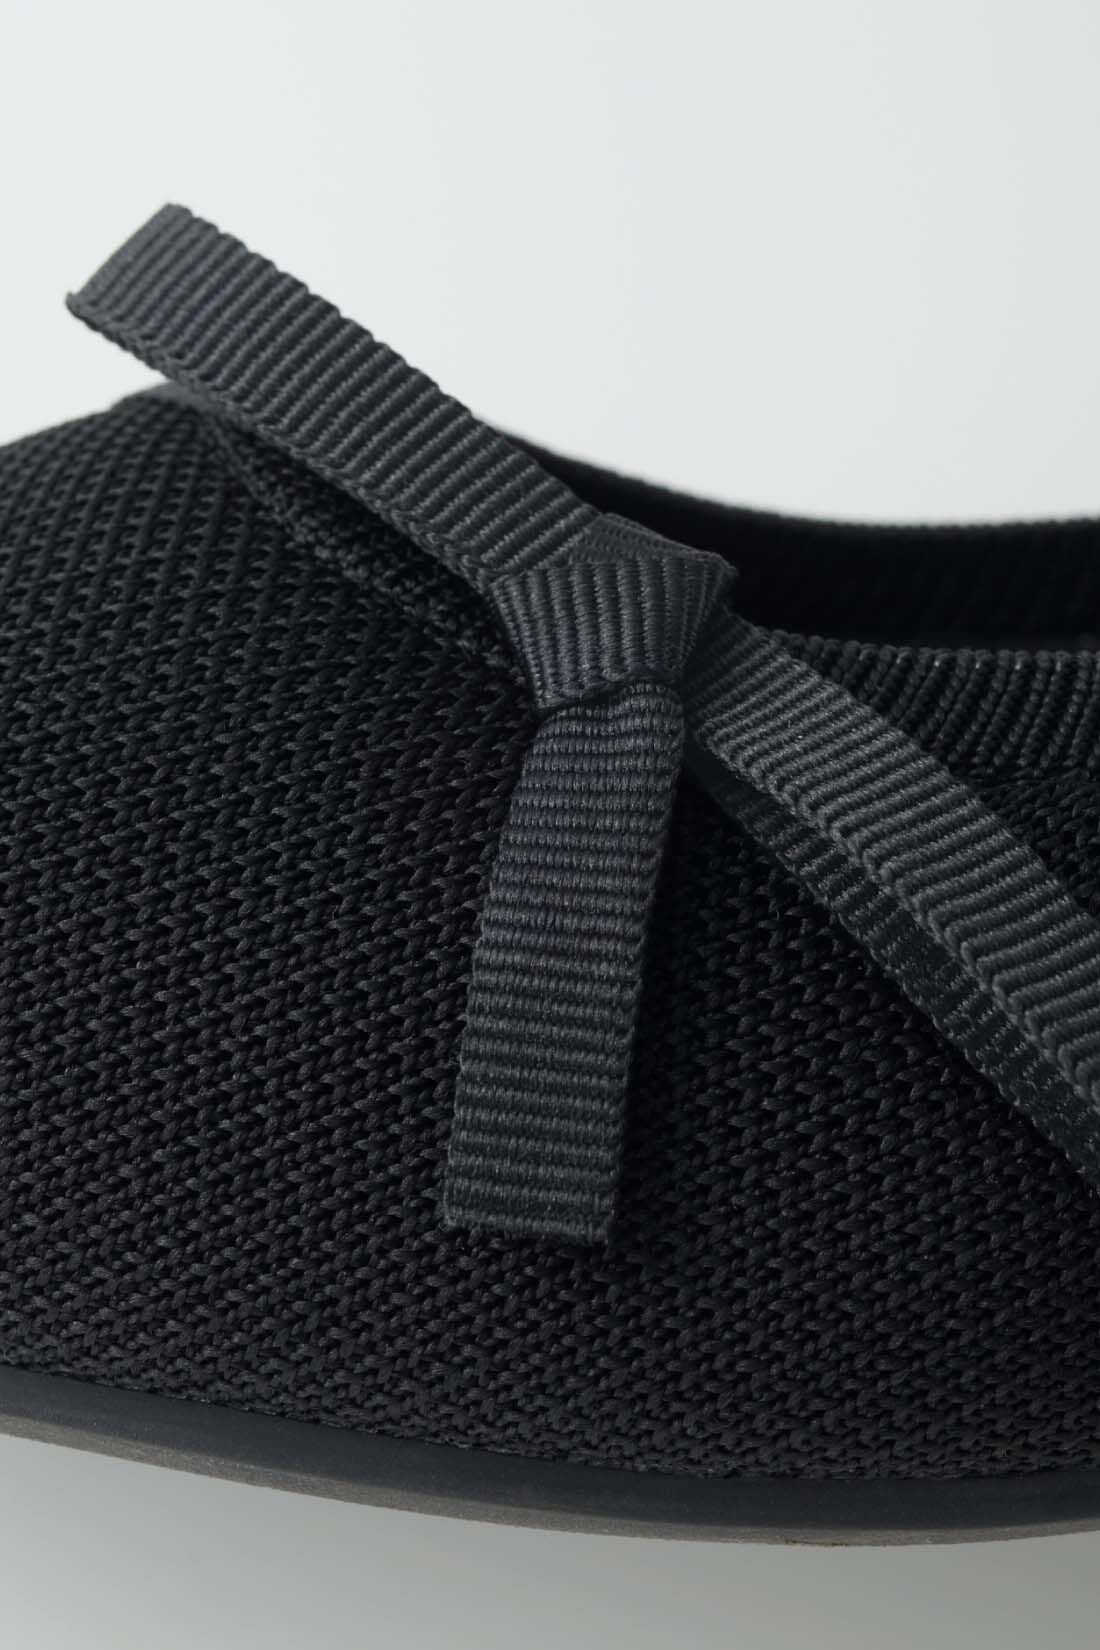 ファッションスペシャル|【3～10日でお届け】IEDIT[イディット]　ふかふかインソールで快適な グログランリボンの上品ニットパンプス〈ブラック〉|外側のマットなニット素材は、足にフィットしやすい伸びやかな履き心地。